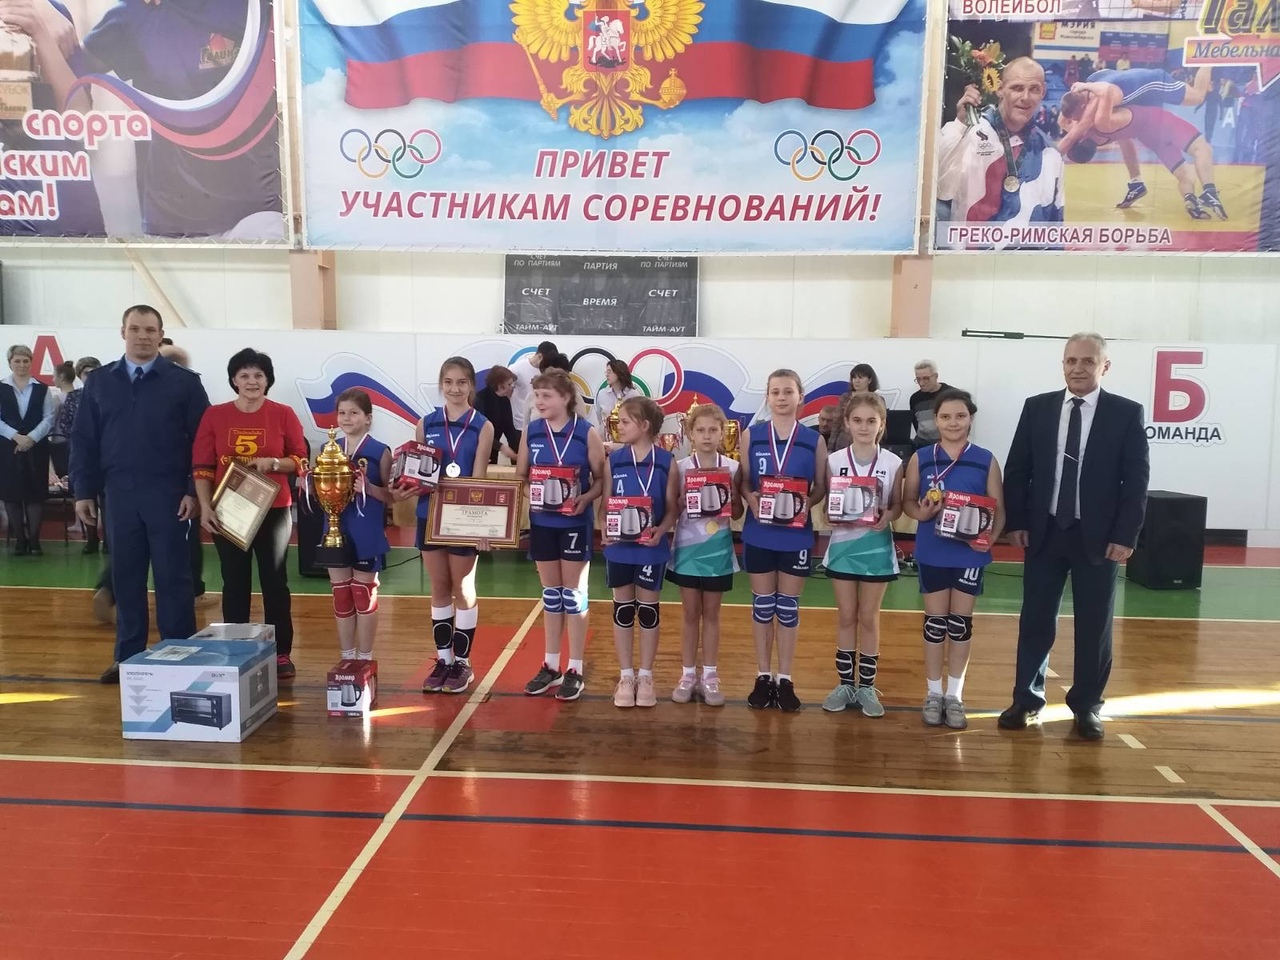 В Кузнецке проходит турнир по волейболу среди мужчин, посвященный памяти воина-интернационалиста Павла Щипанова 